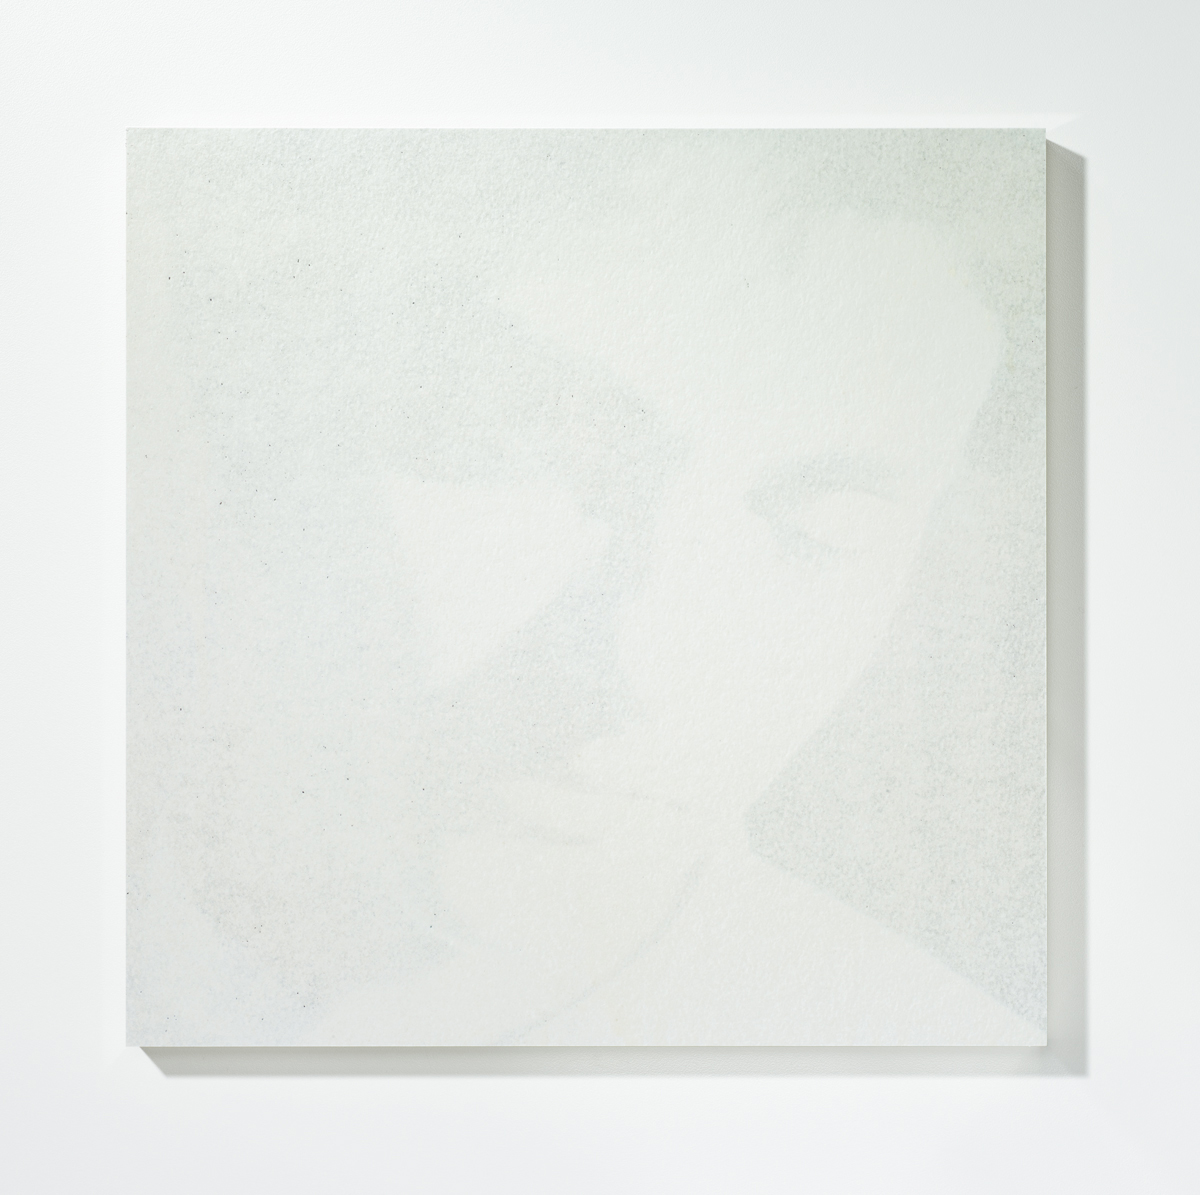 Löschung 7, 201630 x 30 cmPigmentprint, gelöscht, gefirnisst, kaschiert auf Acrylglas